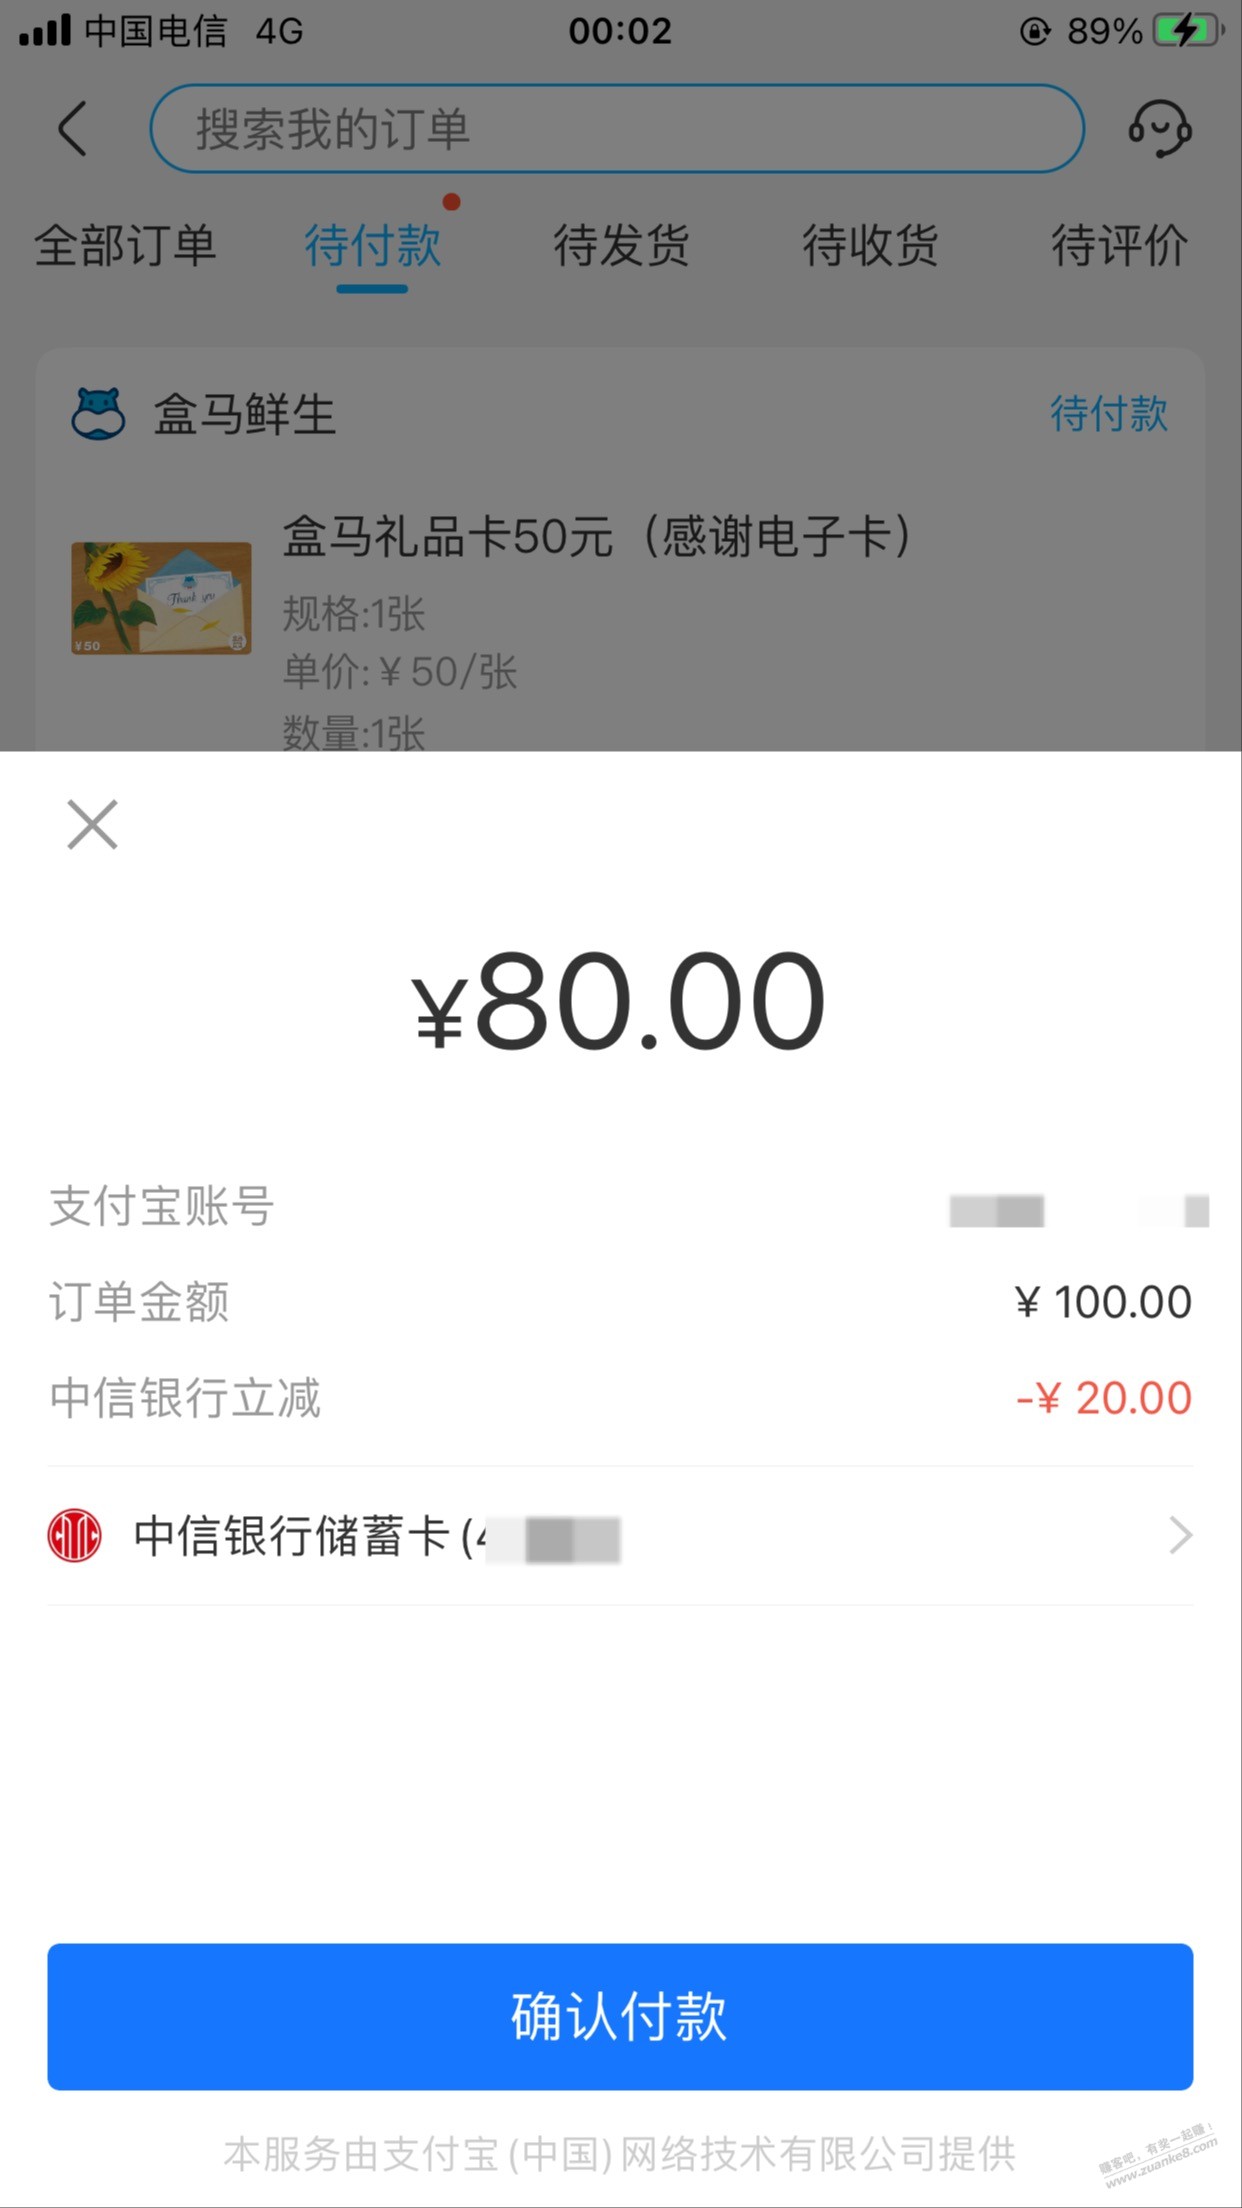 快-盒马礼品卡100-20-中信储蓄卡